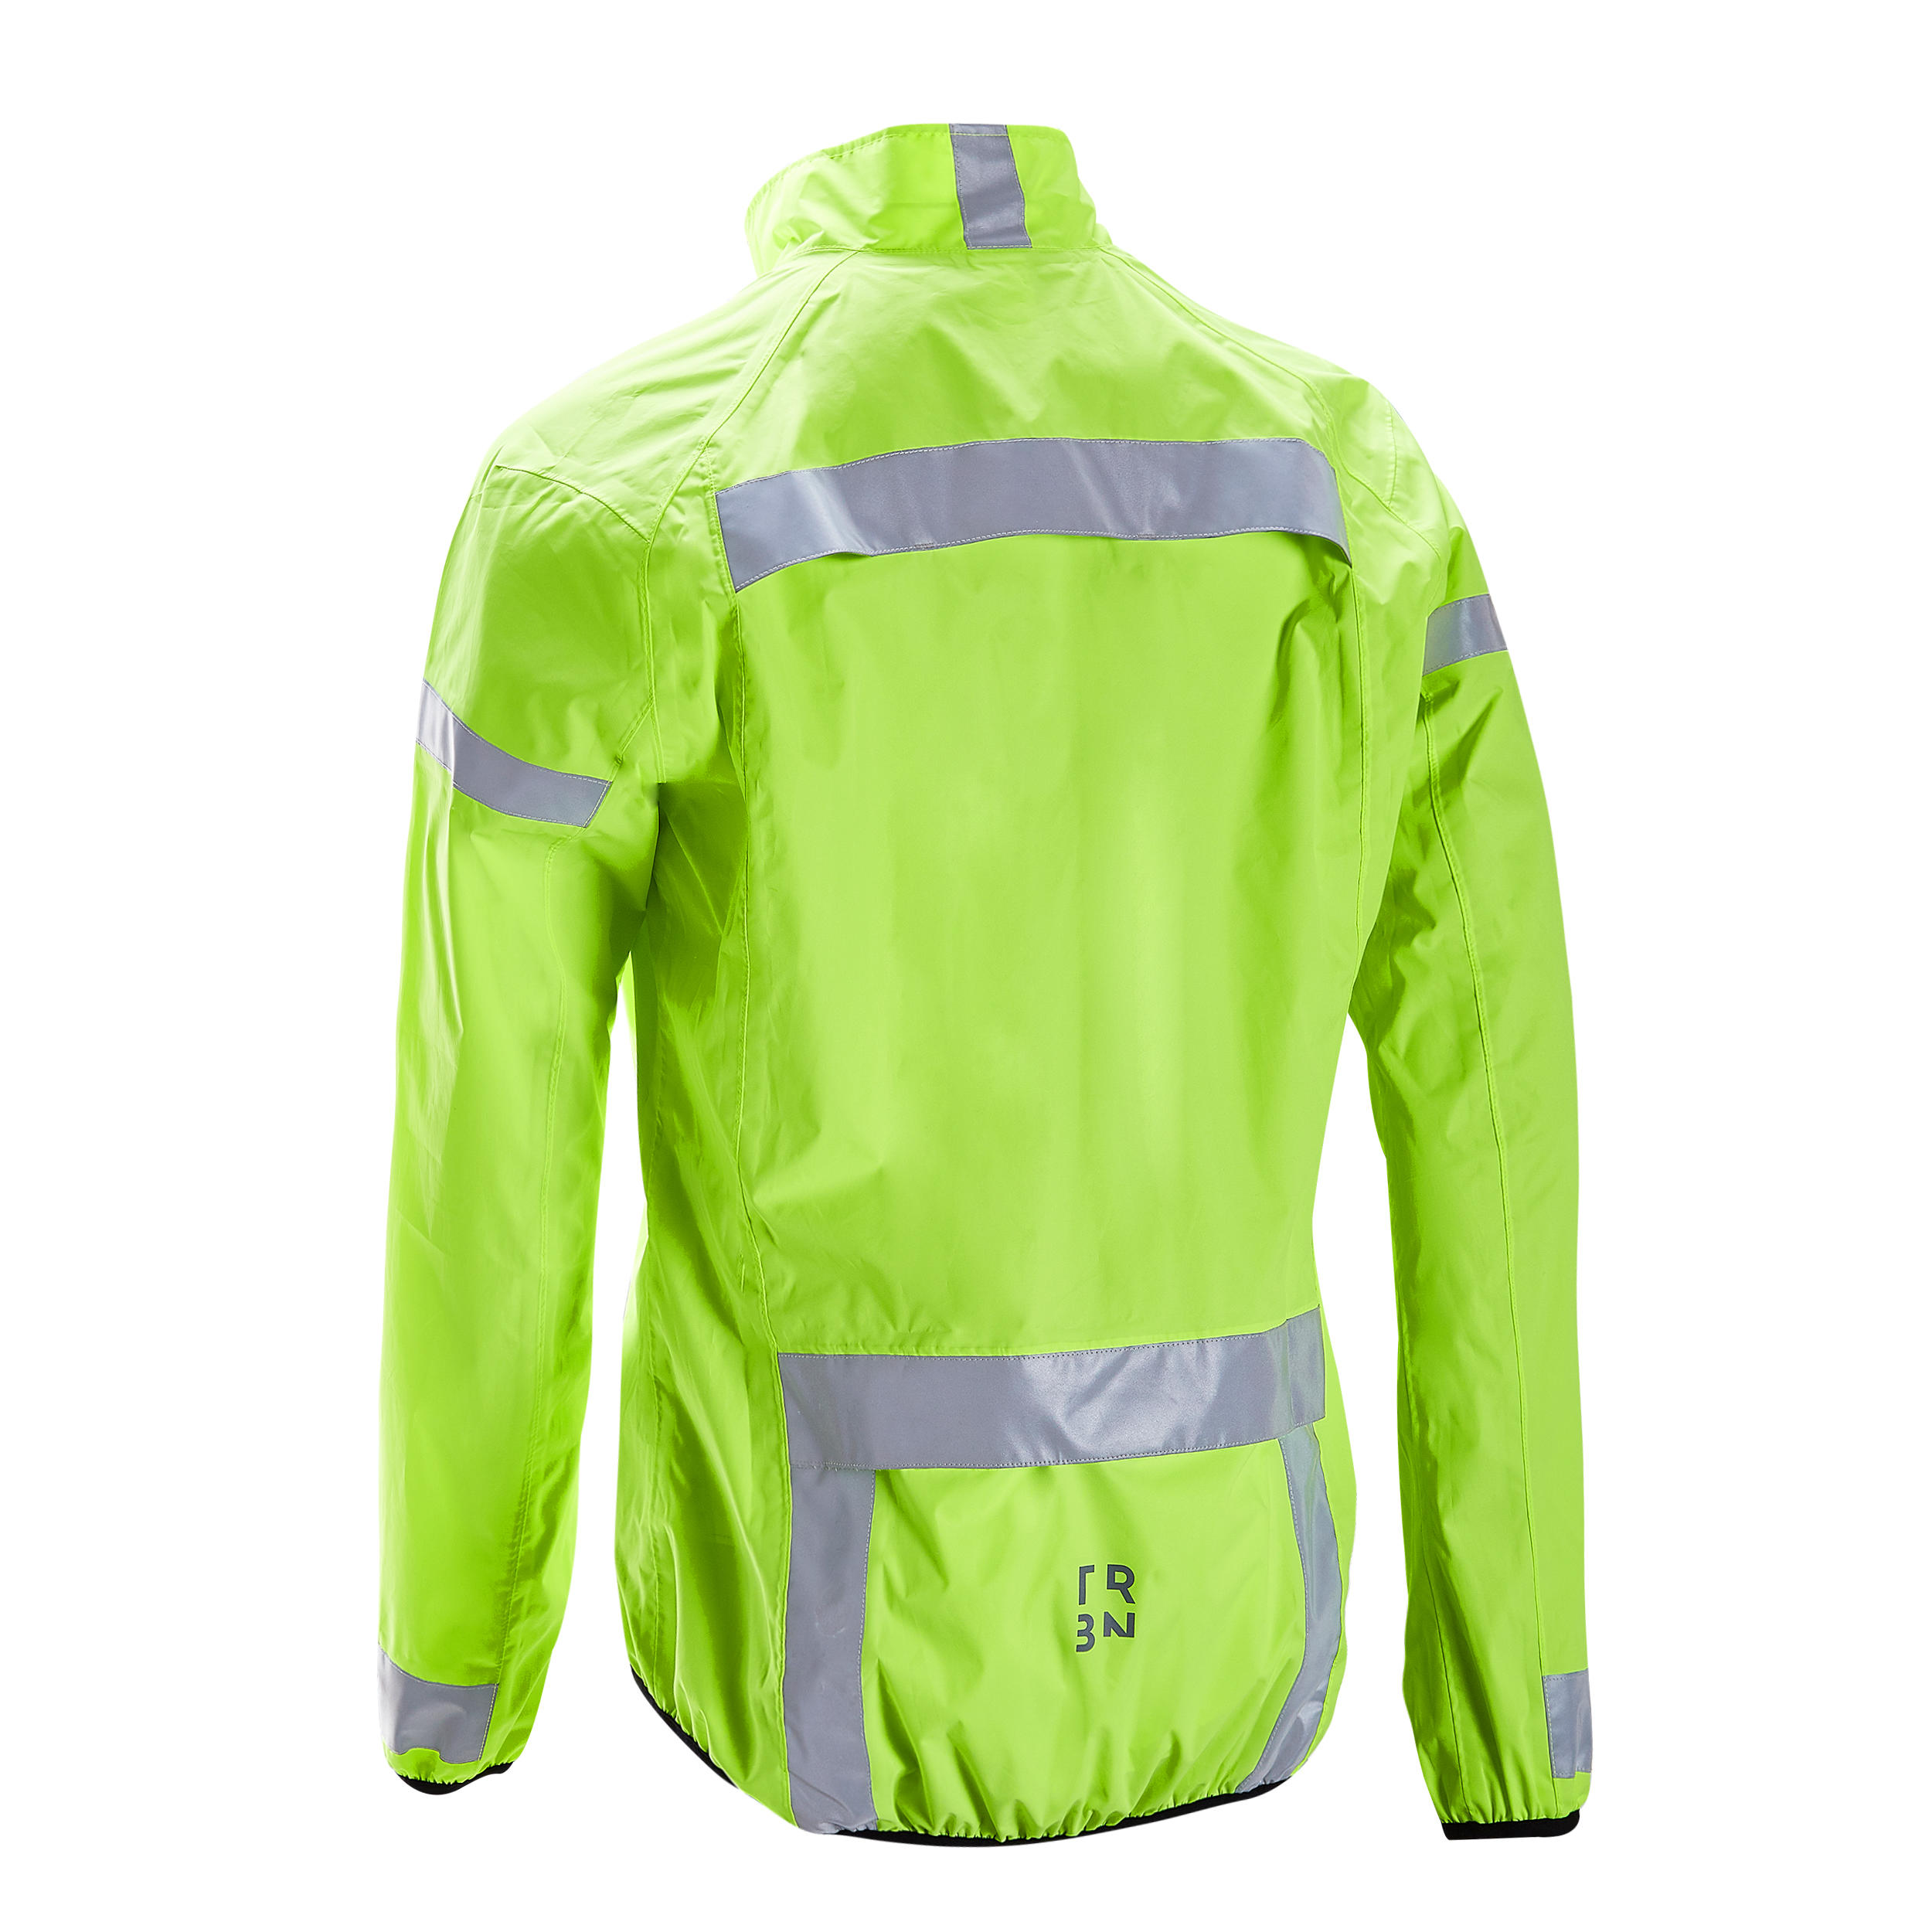 decathlon reflective jacket